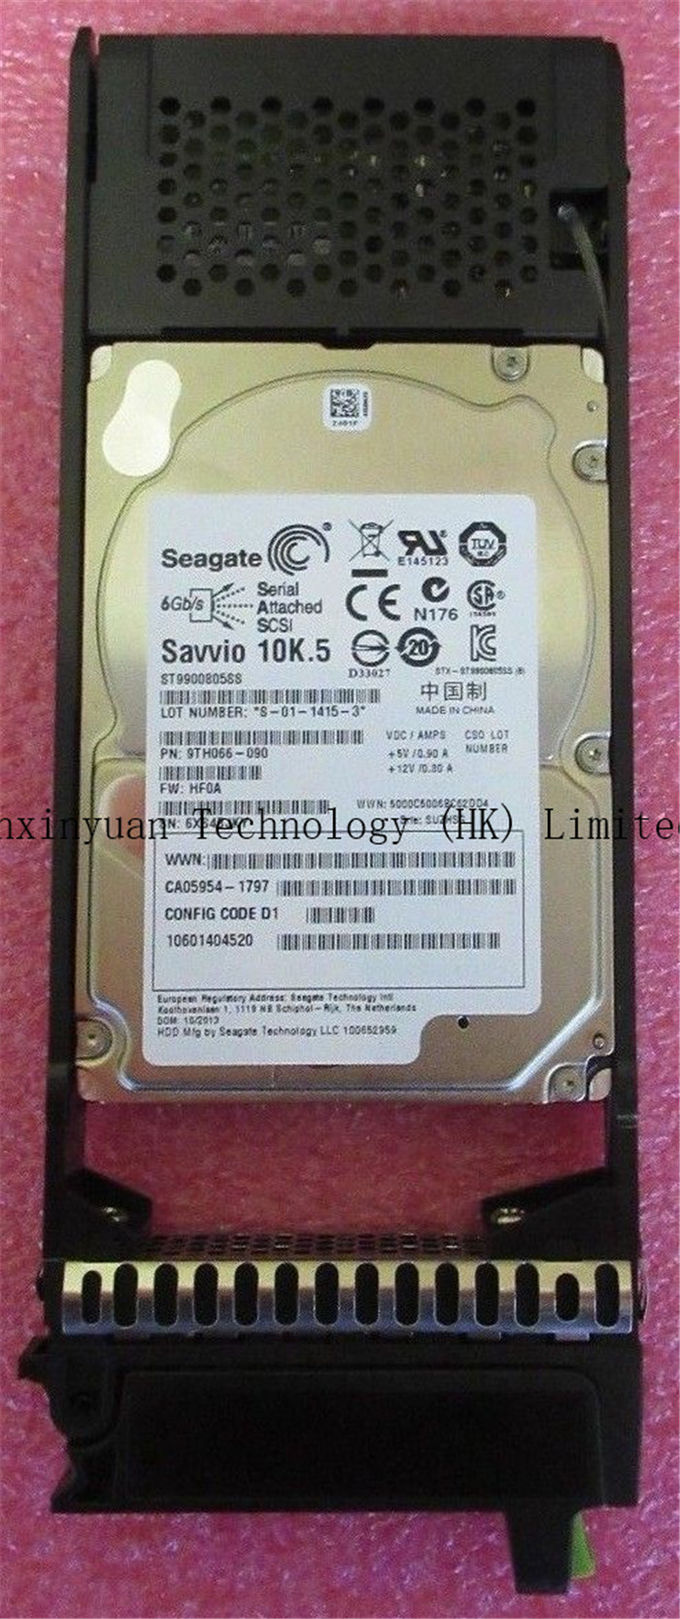 Fujitsu Eternus DX S2 HDD 900GB SAS 6GB/s 10K 2.5" HDD In Caddy CA07339-E524